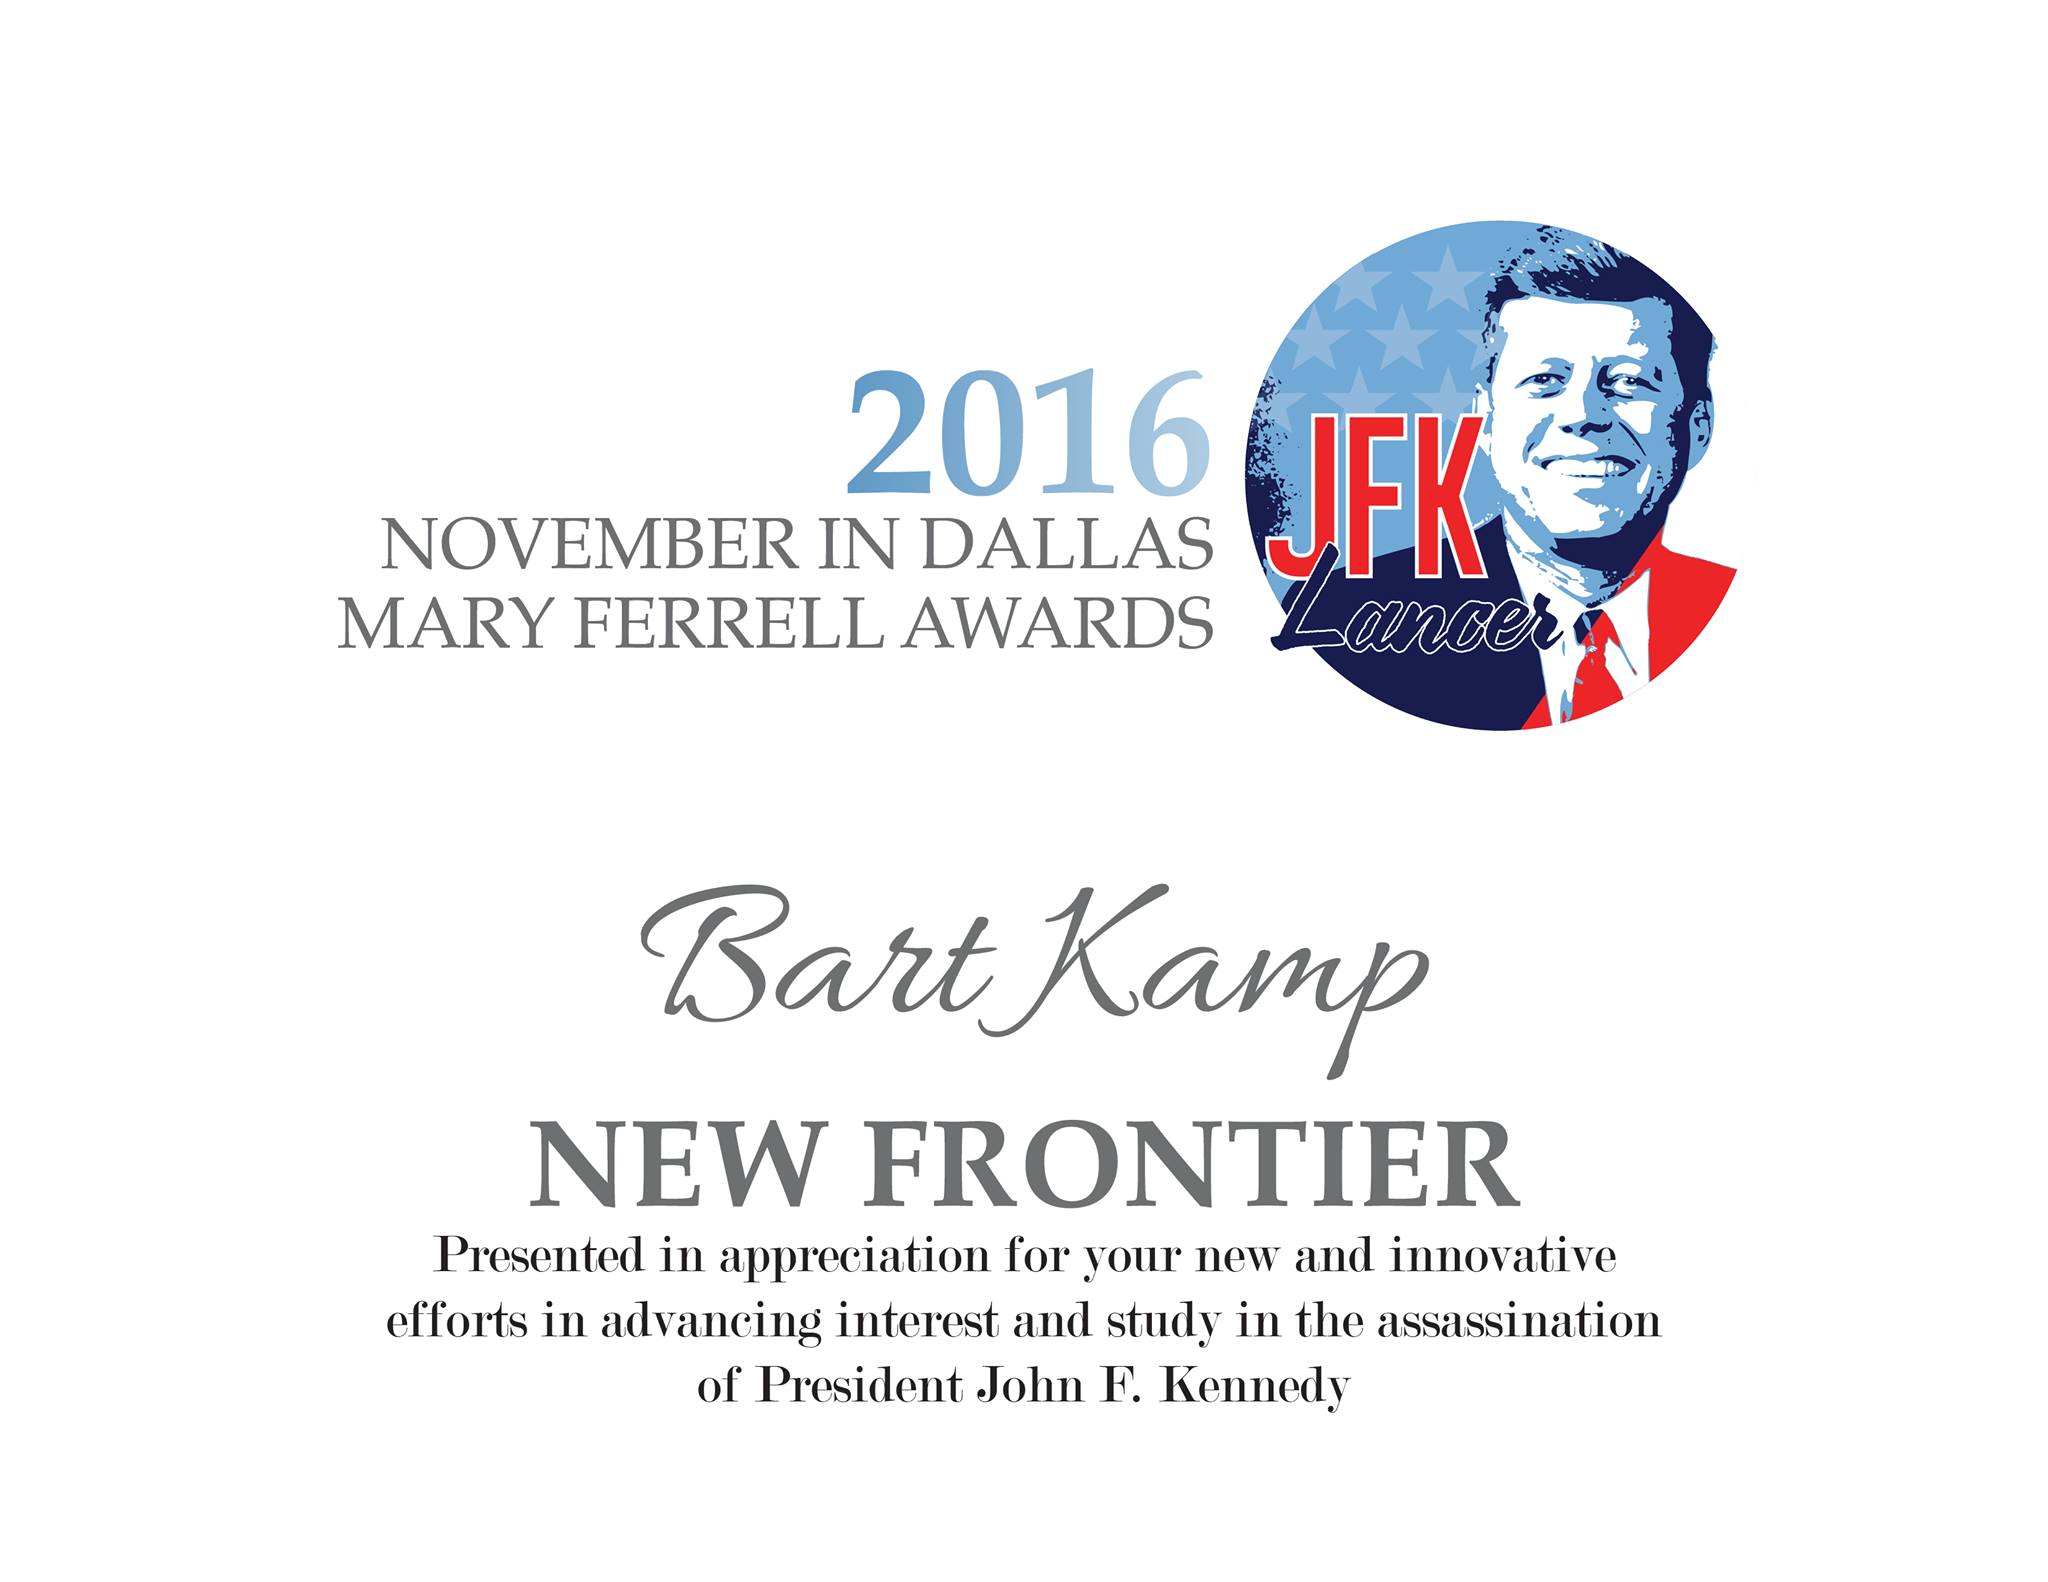 Bart-Kamp-JFK-Lancer-New-Frontier-Award-